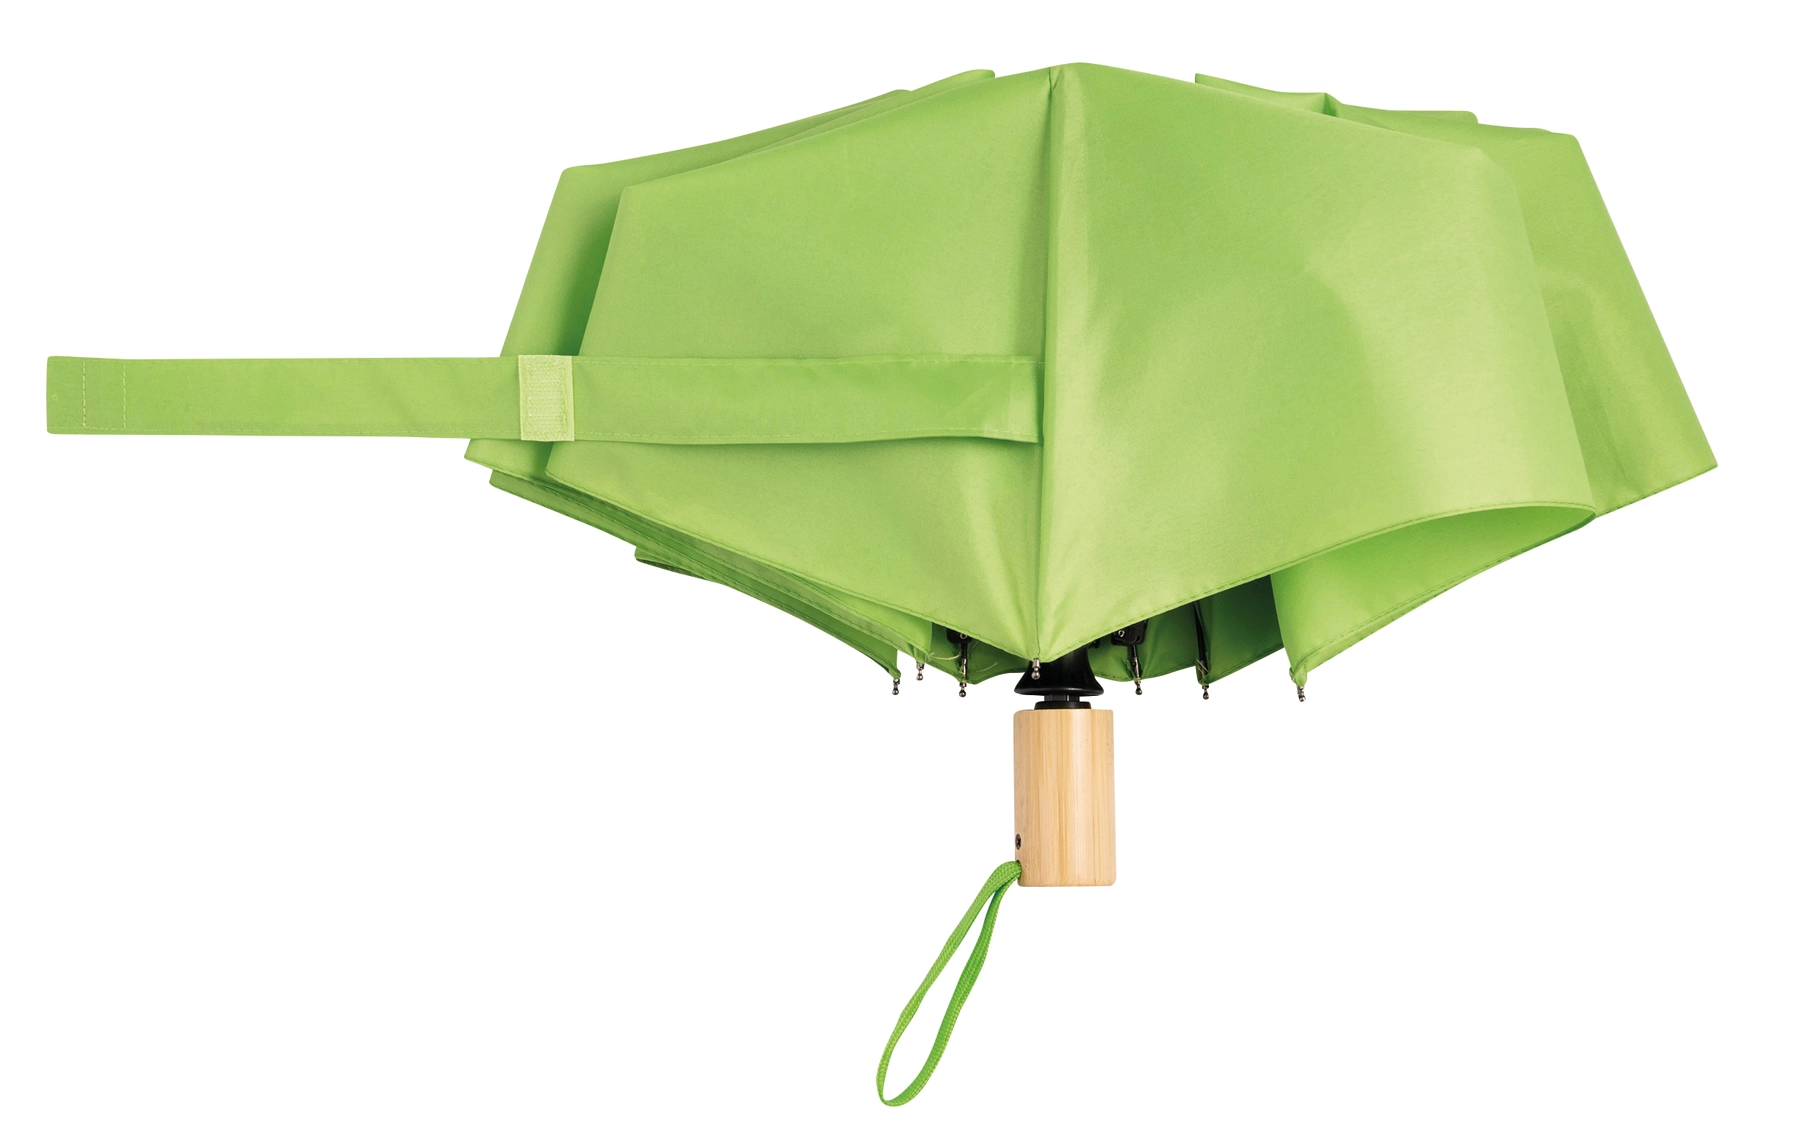 Automatyczny, wiatroodporny parasol kieszonkowy CALYPSO, jasnozielony 56-0101275